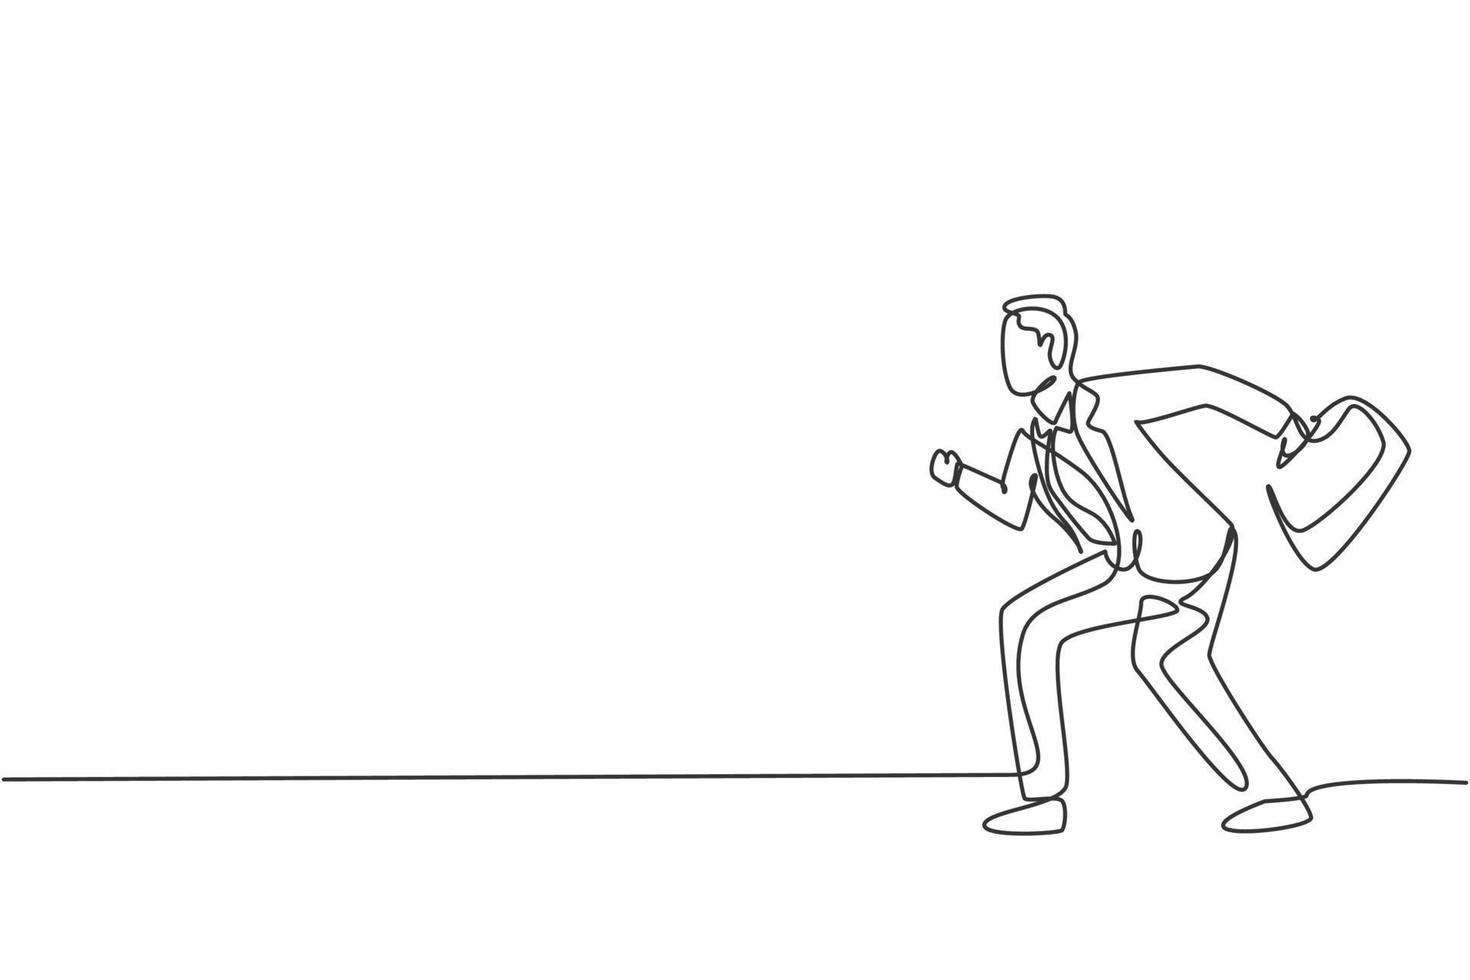 Kontinuierliche Zeichnung eines jungen männlichen Arbeiters, der bereit ist, zu sprinten, um ein Geschäftswettbewerbsrennen zu gewinnen. Geschäftsmetapher. minimalistisches Konzept. trendige Single-Line-Draw-Design-Vektorgrafik-Illustration vektor